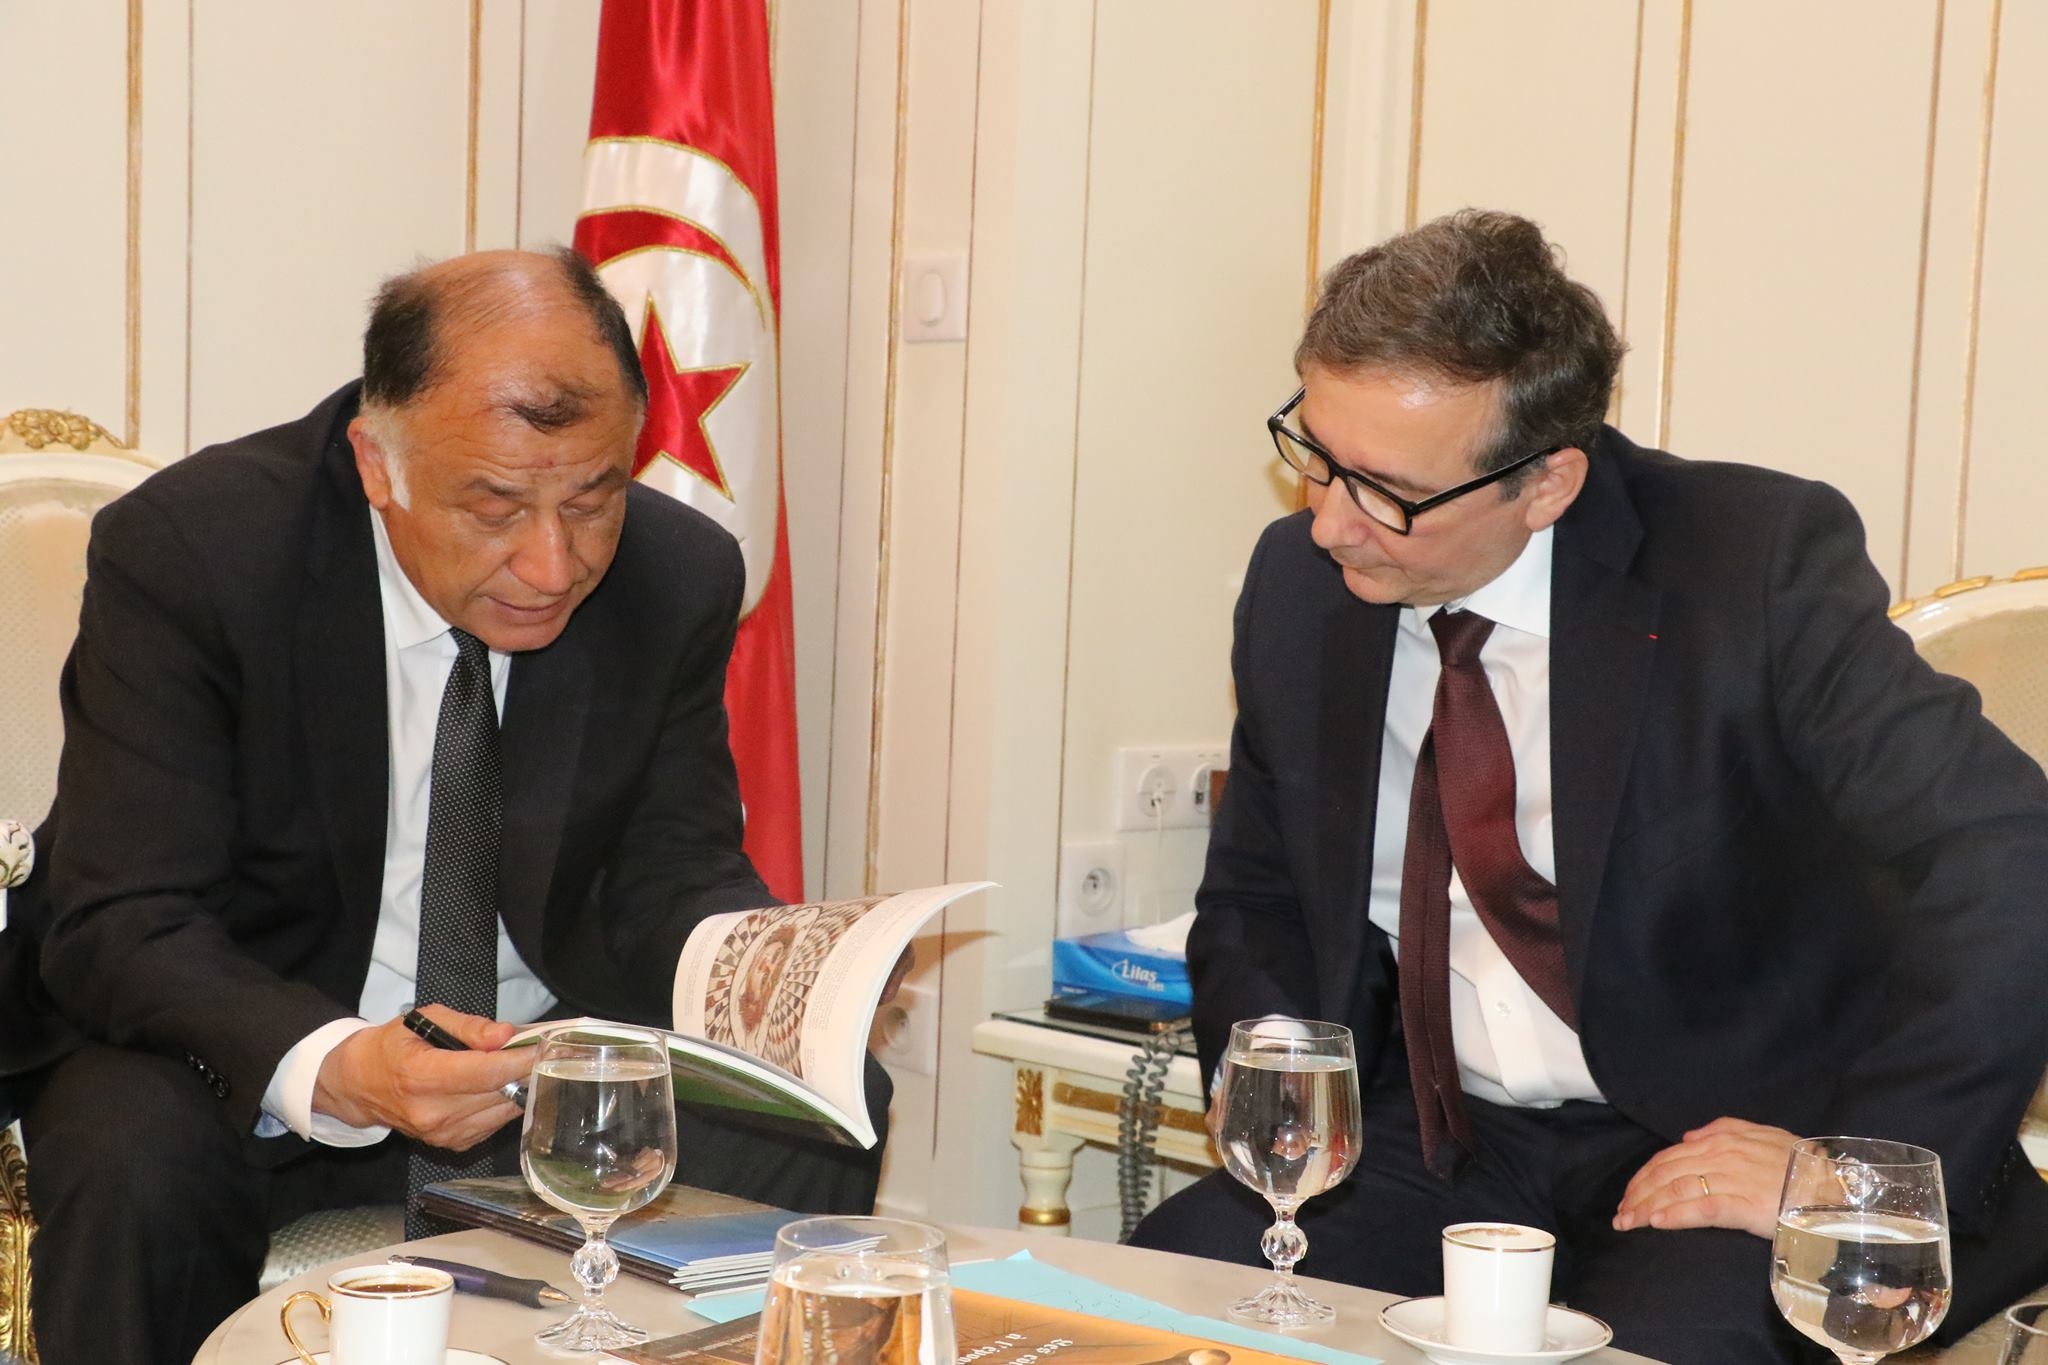  لقاء بين وزير التربية وأكاديميين من فرنسا يختتم بامضاء اتفاقيات